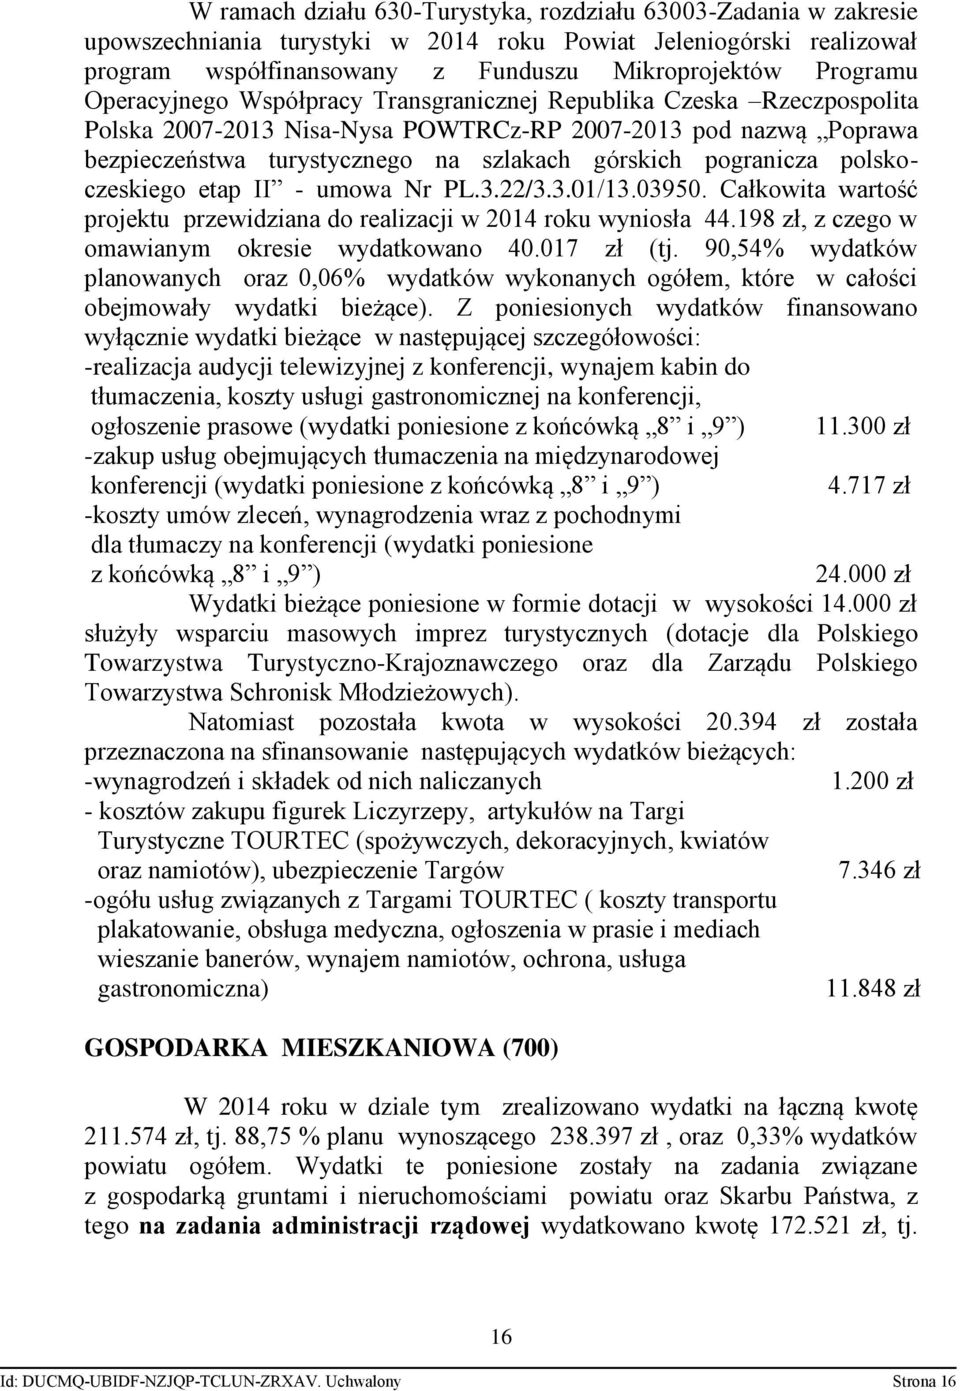 polskoczeskiego etap II - umowa Nr PL.3.22/3.3.01/13.03950. Całkowita wartość projektu przewidziana do realizacji w 2014 roku wyniosła 44.198 zł, z czego w omawianym okresie wydatkowano 40.017 zł (tj.